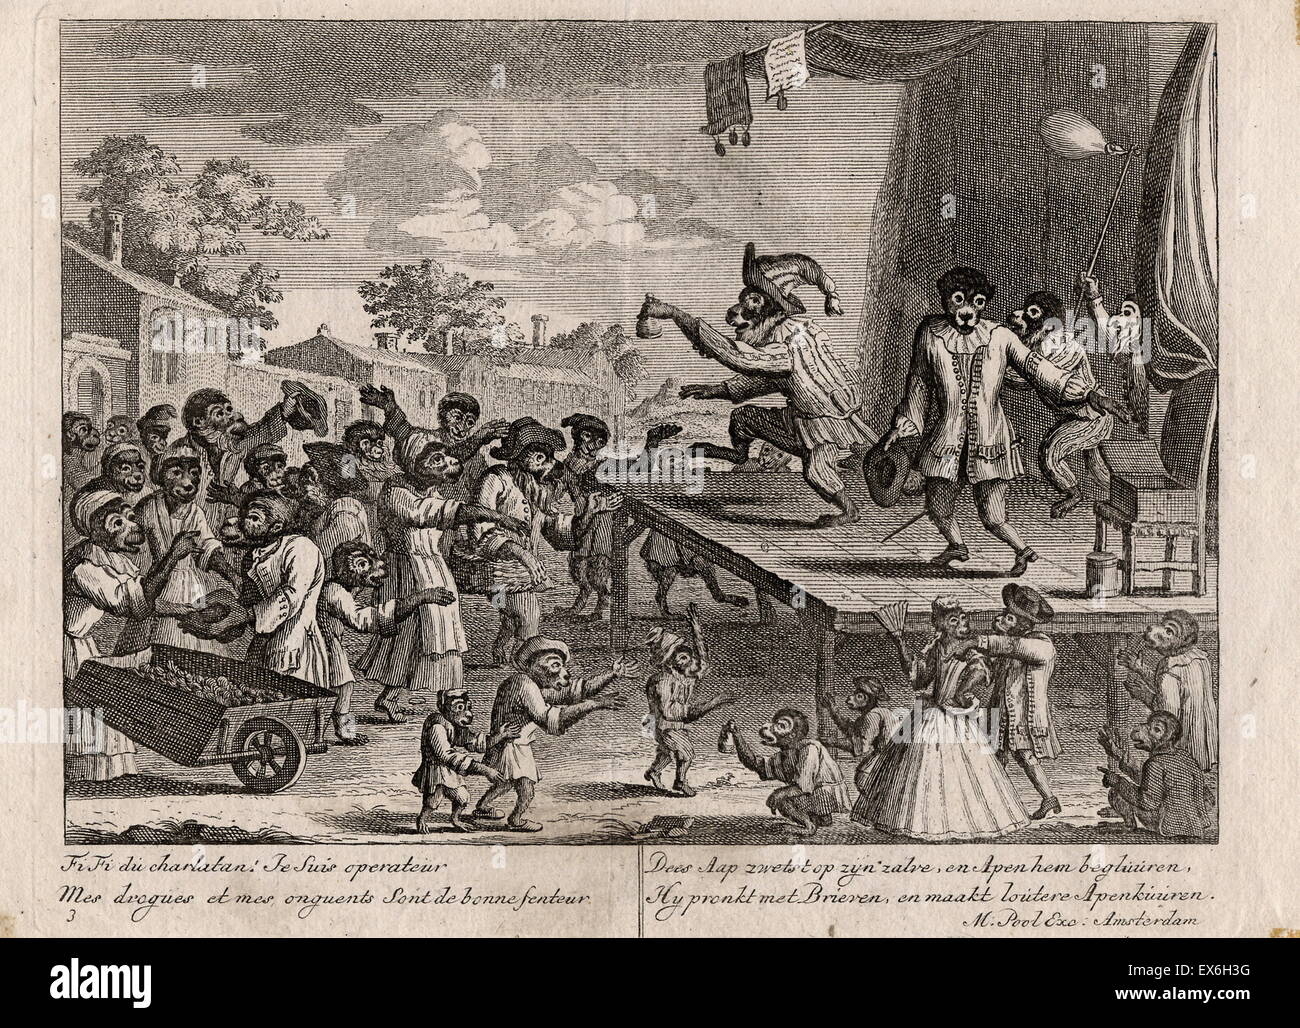 Markt-Szene mit Affen als Menschen verkleidet. Ein Quack stehen auf einer Plattform in einem Markt Falken seine "Medikamente". Direkt unter dem Bild sind zwei Inschriften, die linke ist Französisch, rechts ist Niederländisch. 18. Jahrhundert Stockfoto